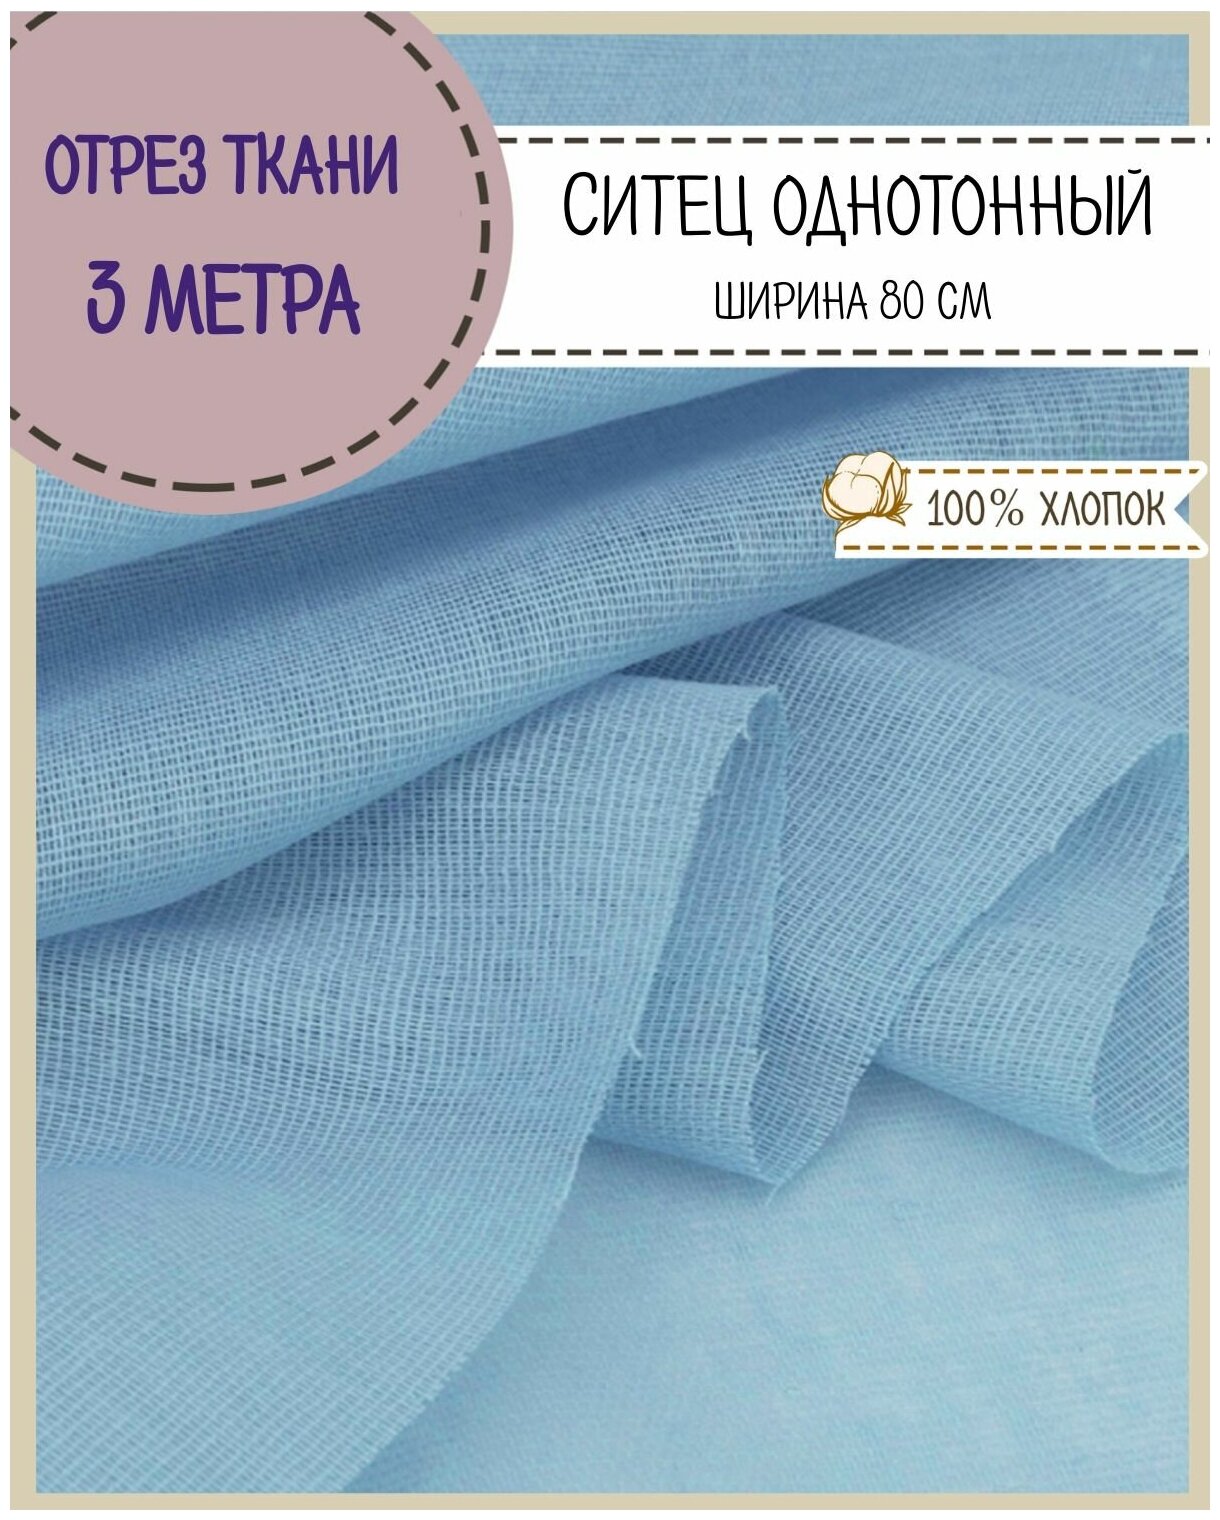 Ткань Ситец однотонный, цв. голубой , ш-80 см, пл. 65 г/м2, цена за отрез 300*80 см